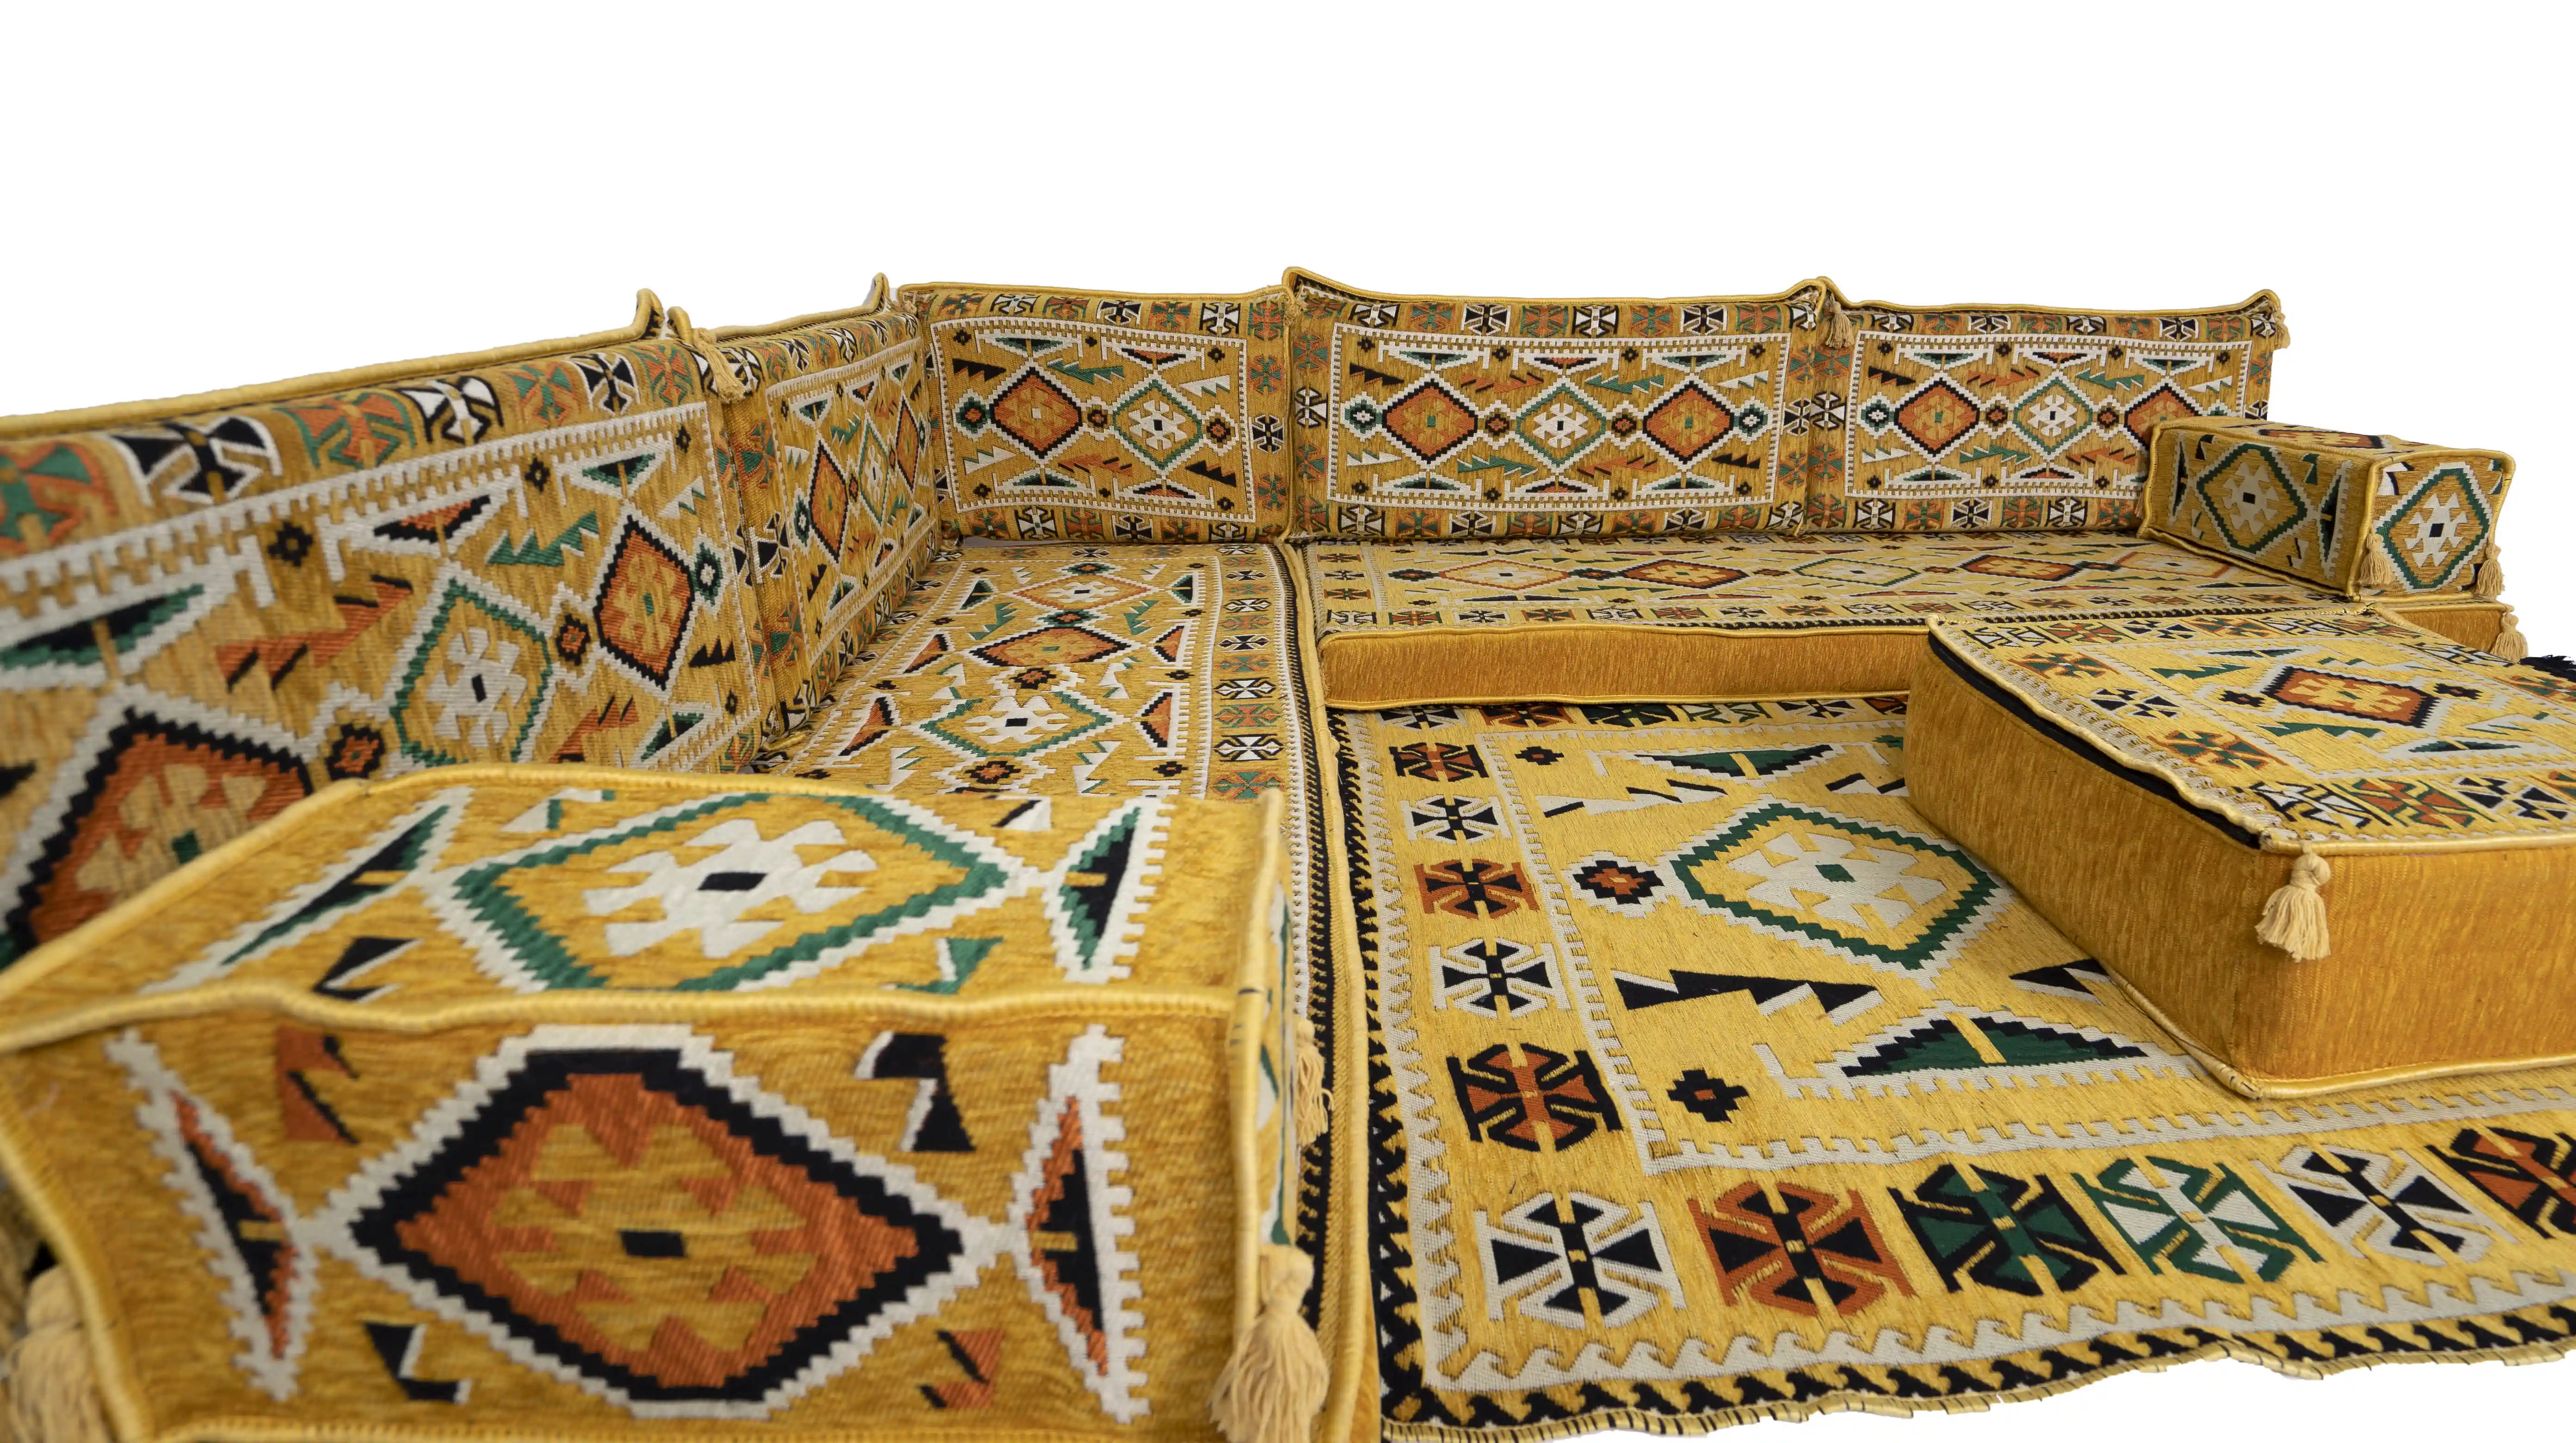 Canapé de sol arabe bleu, Majlis arabe, Jalsa arabe, canapé arabe  traditionnel, siège de sol oriental, coussins de sol, narguilé lounge,  housses de canapé (canapé L + tapis + ottoman) : 